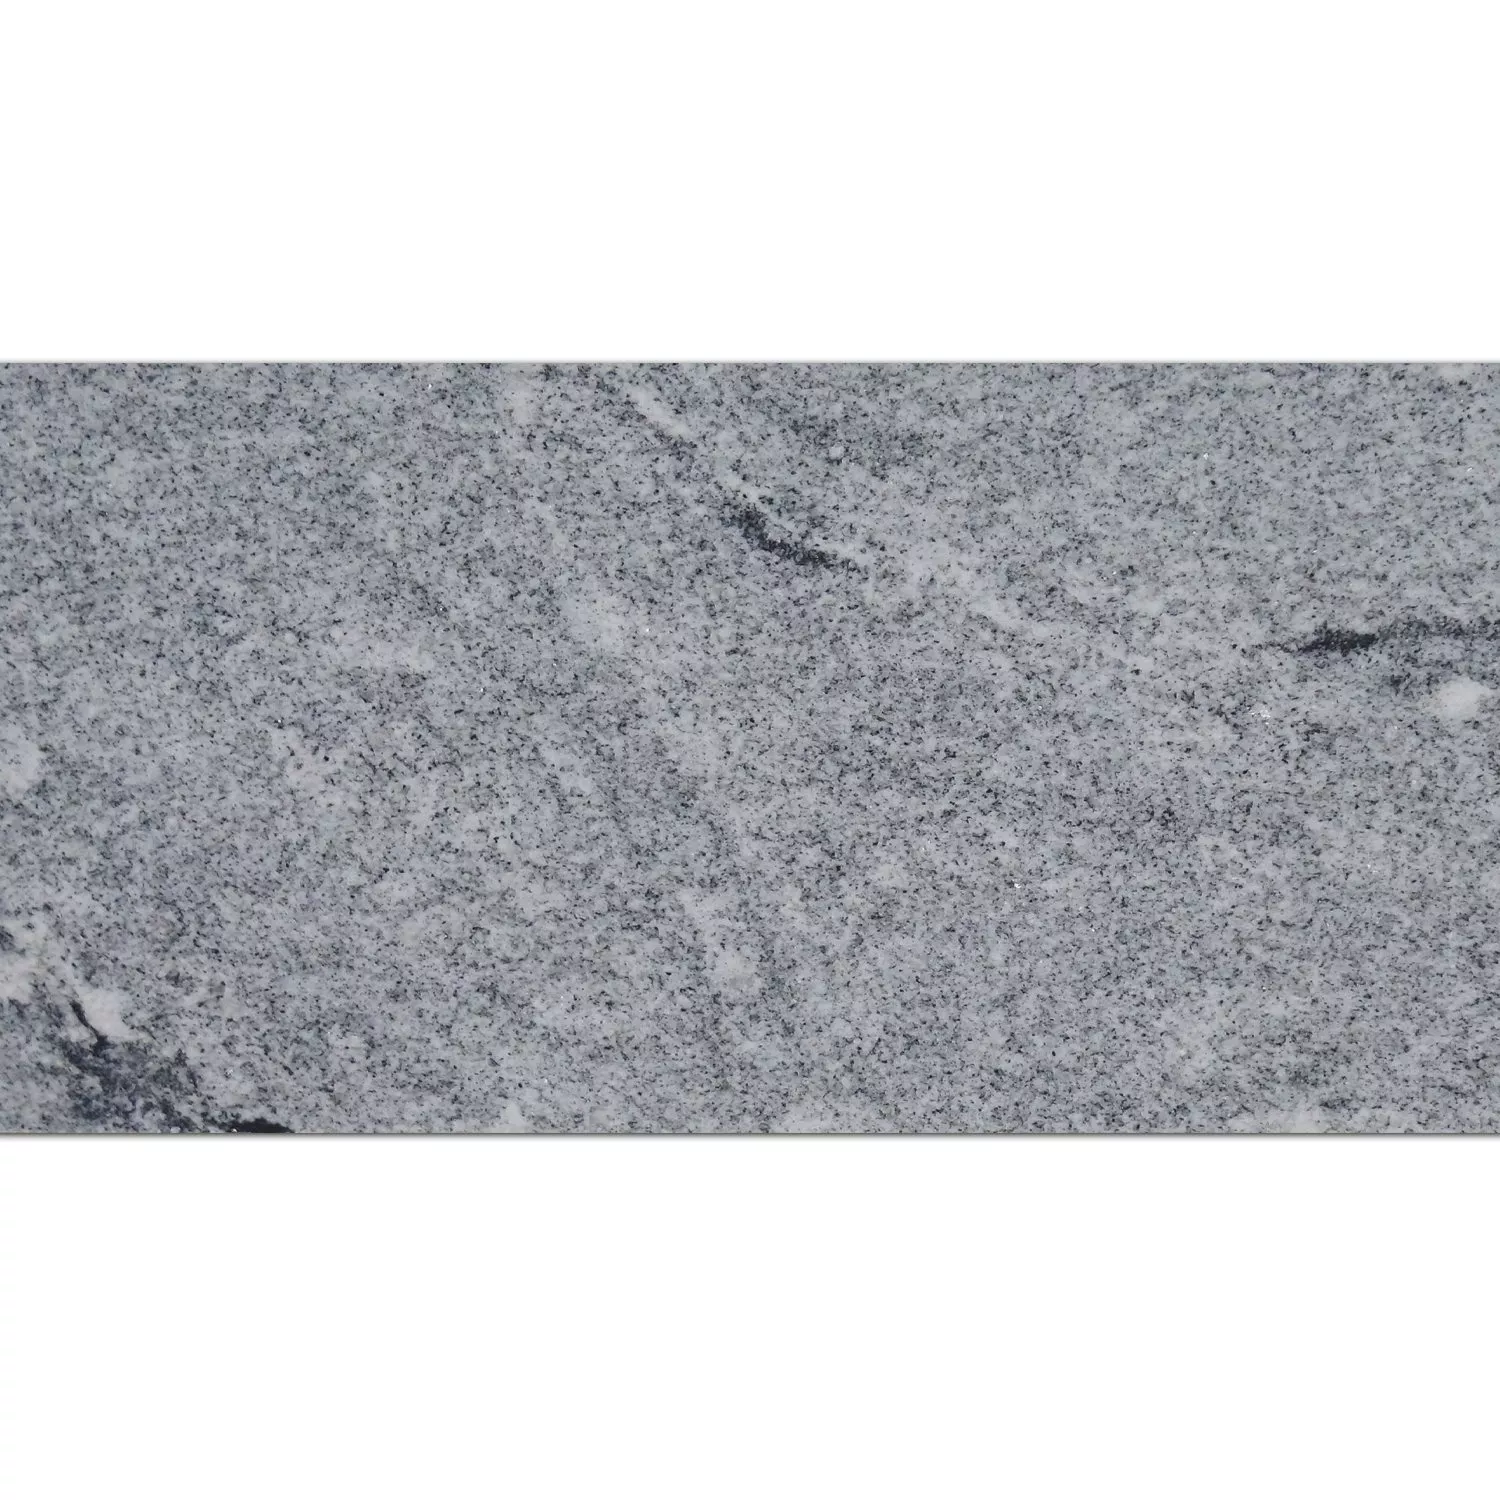 Natural Stone Tiles Granite Viscont White Polished 30,5x61cm